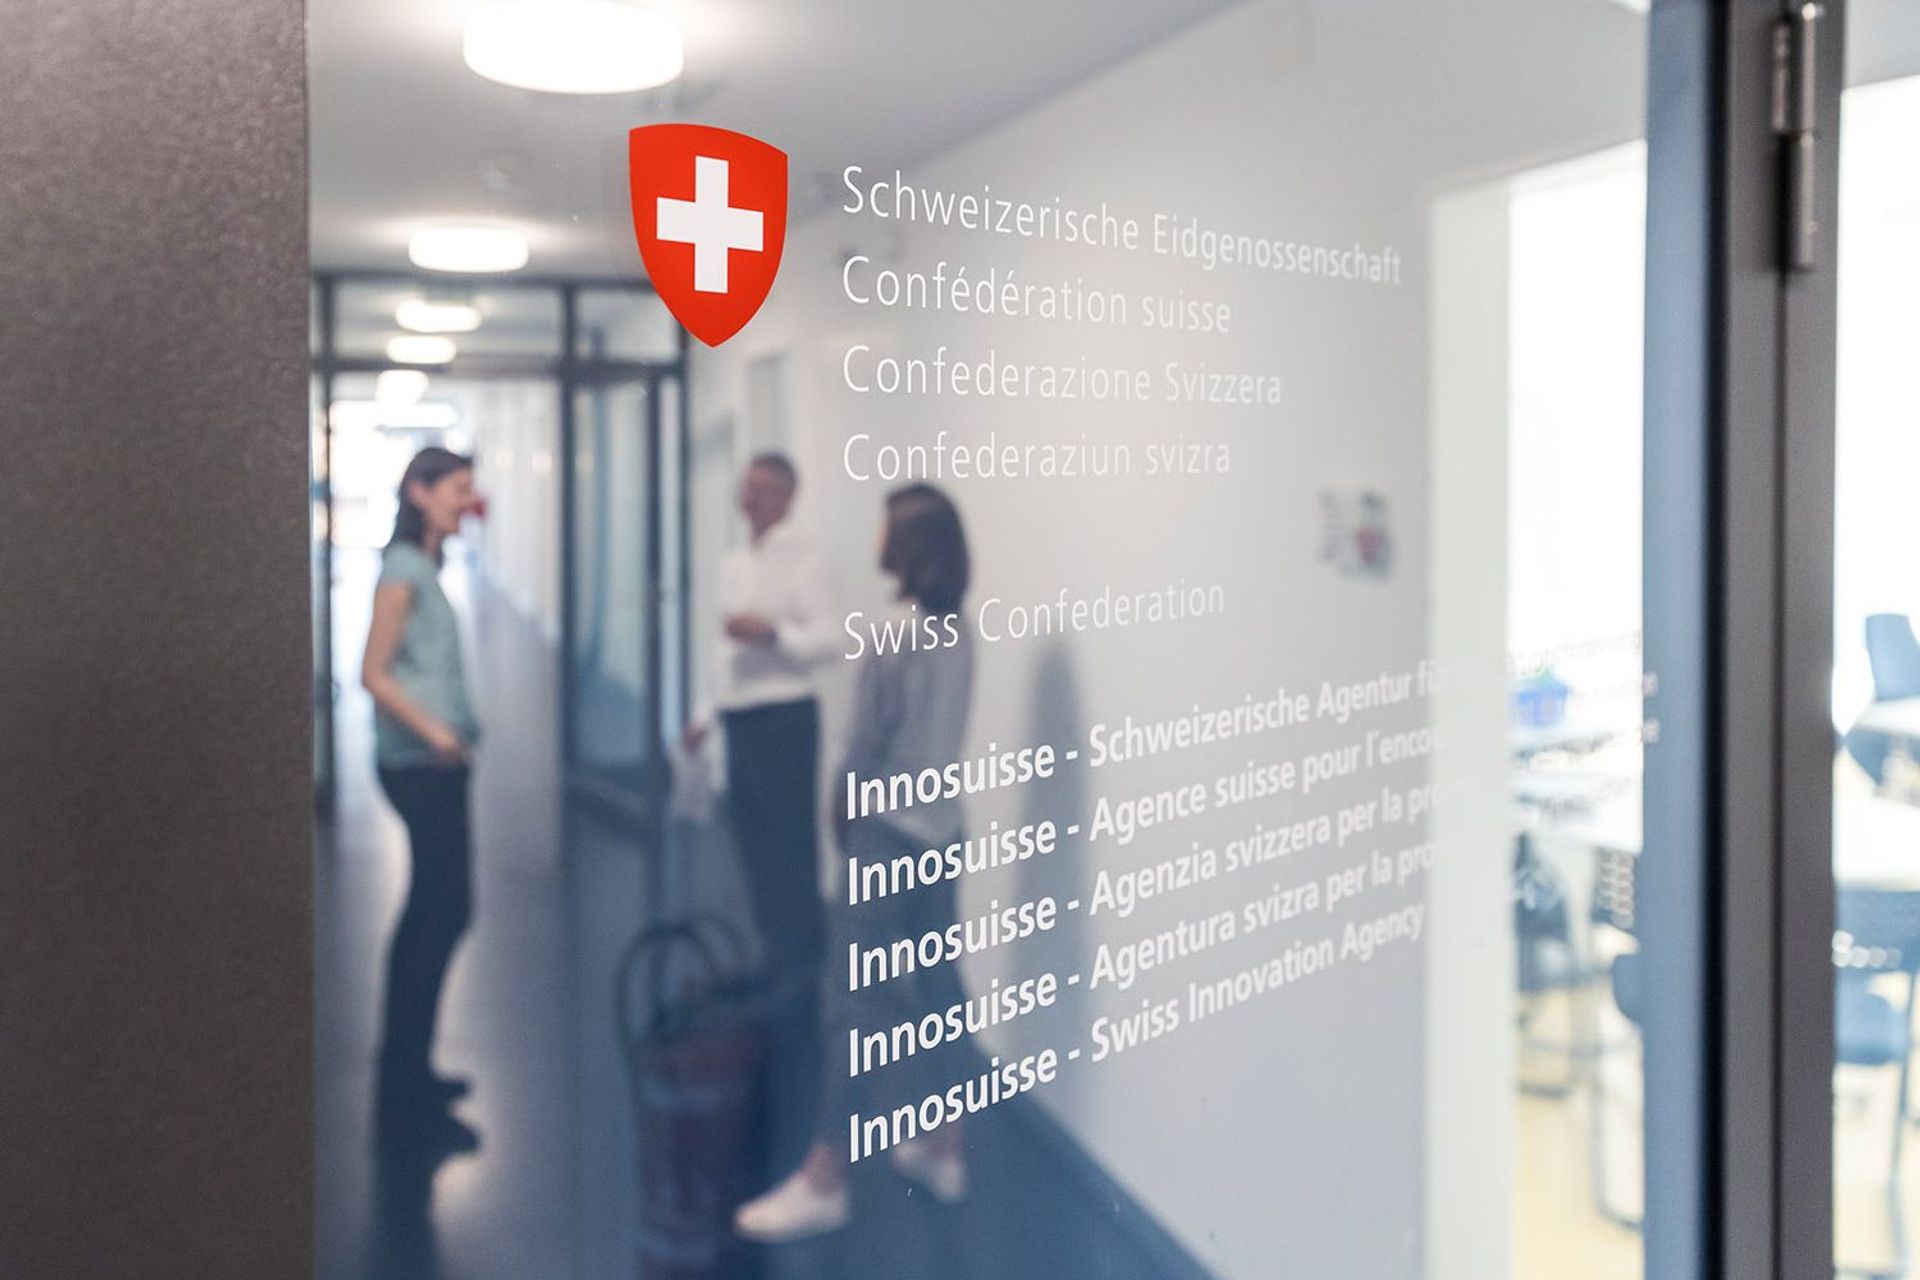 La sede dell'Agenzia svizzera per la promozione dell'innovazione